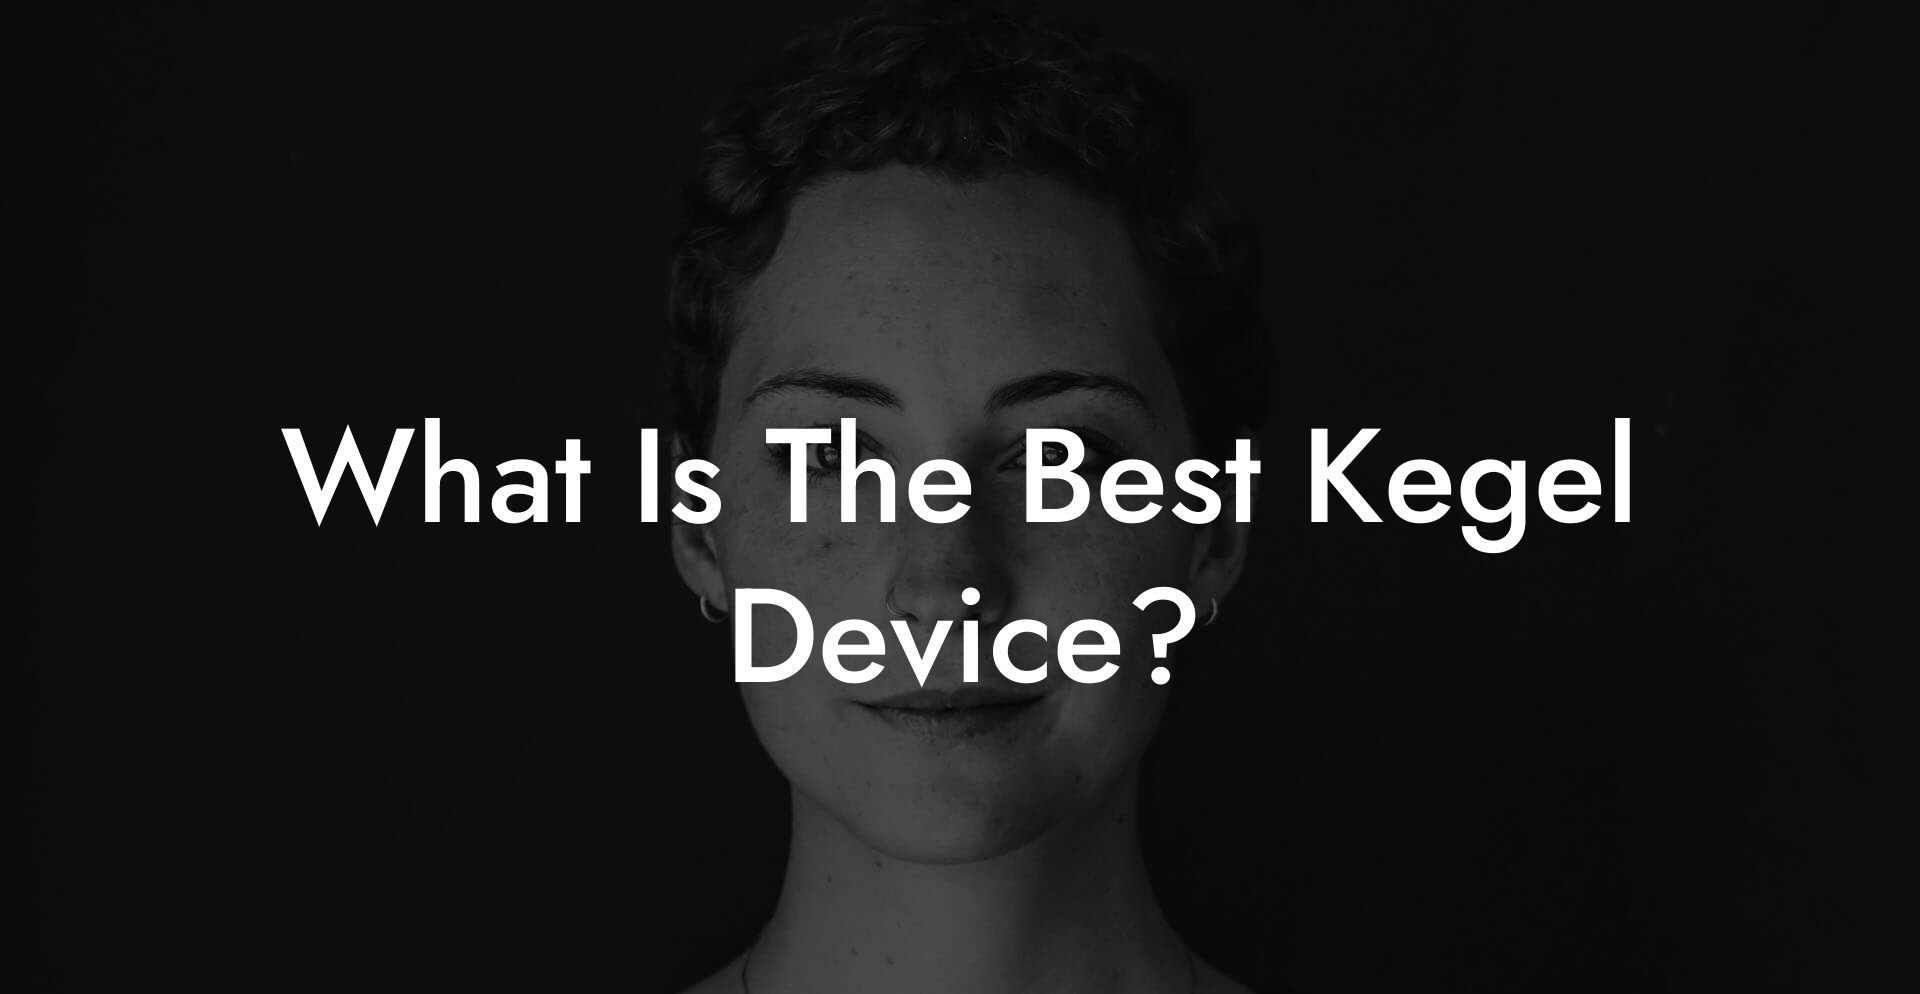 What Is The Best Kegel Device?